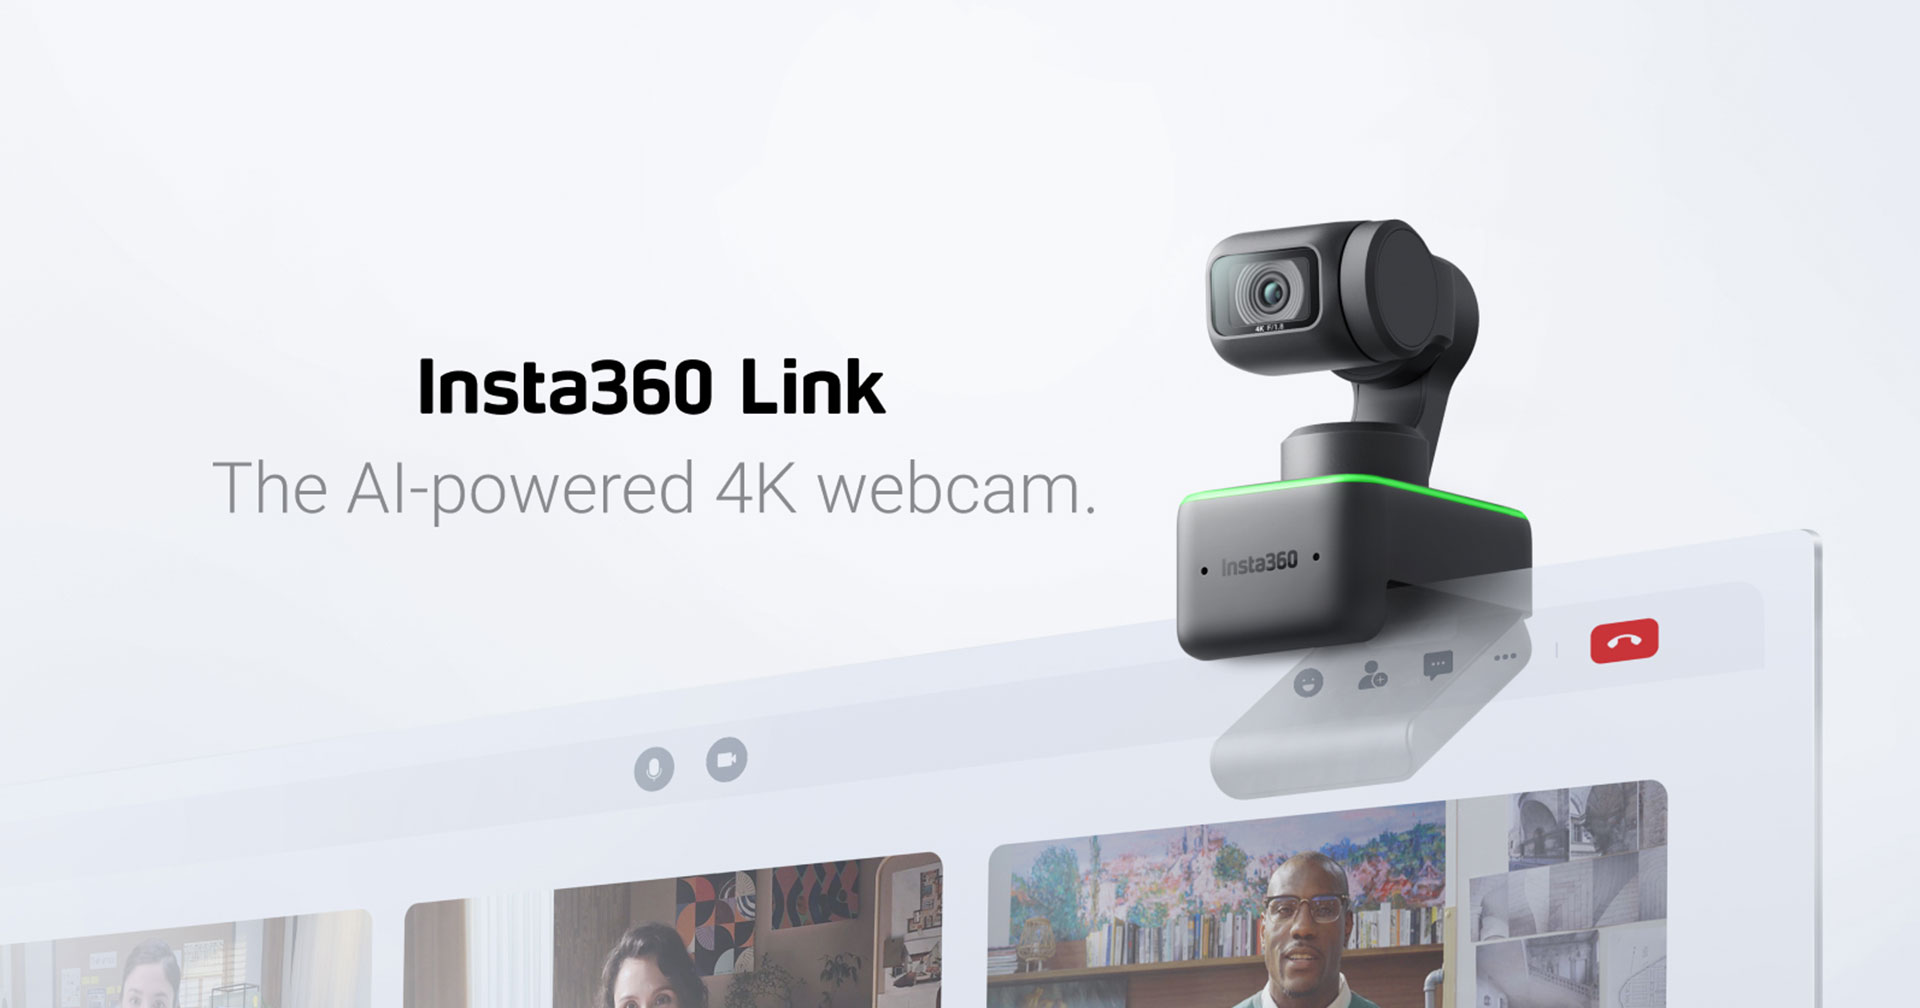 เปิดตัว Insta360 Link มิติใหม่ของกล้อง Webcam 4K ขับเคลื่อนด้วยพลัง AI อัจฉริยะ